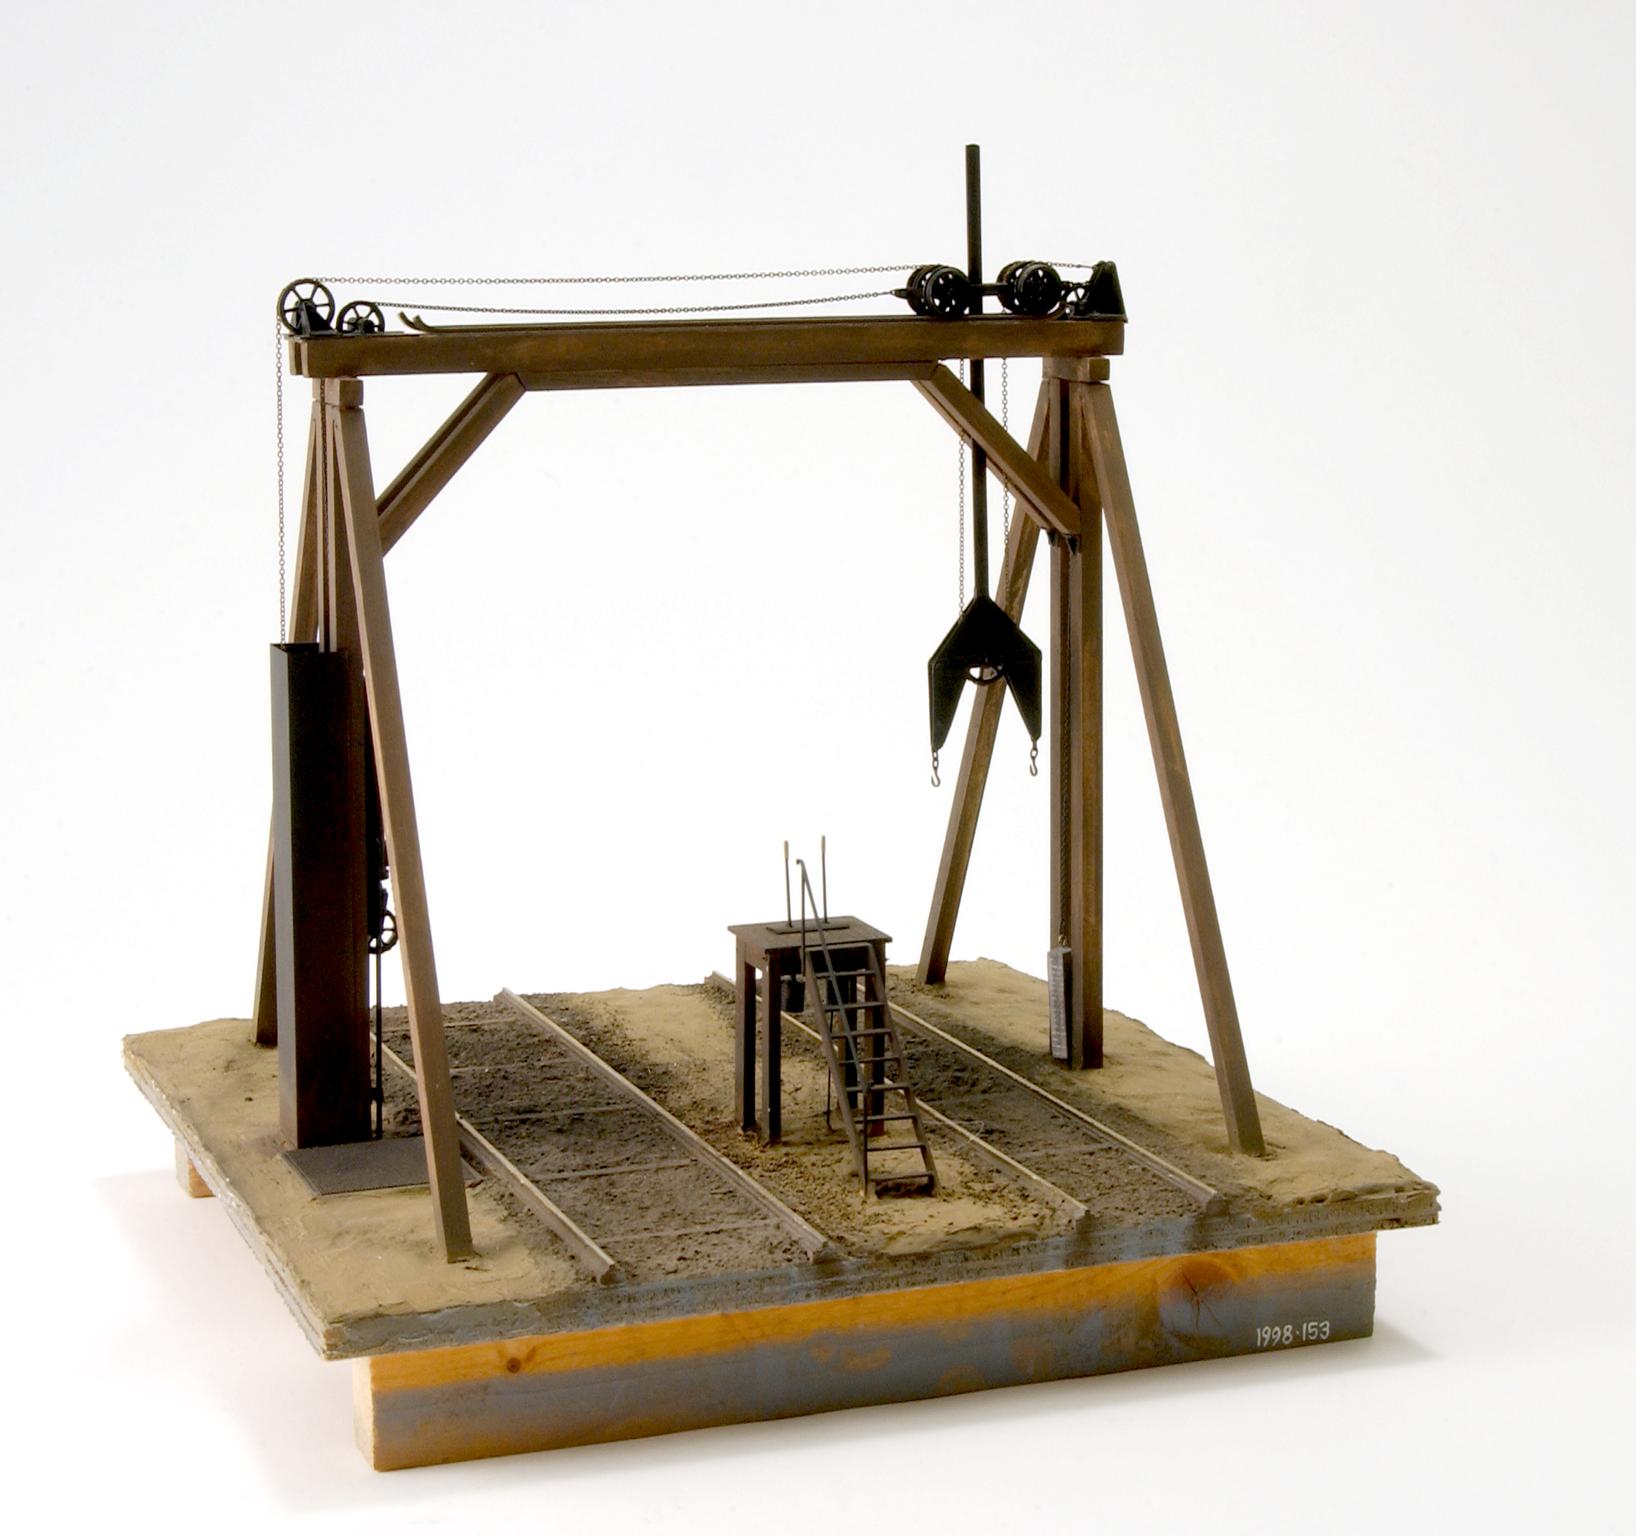 Model of coal box lifting apparatus